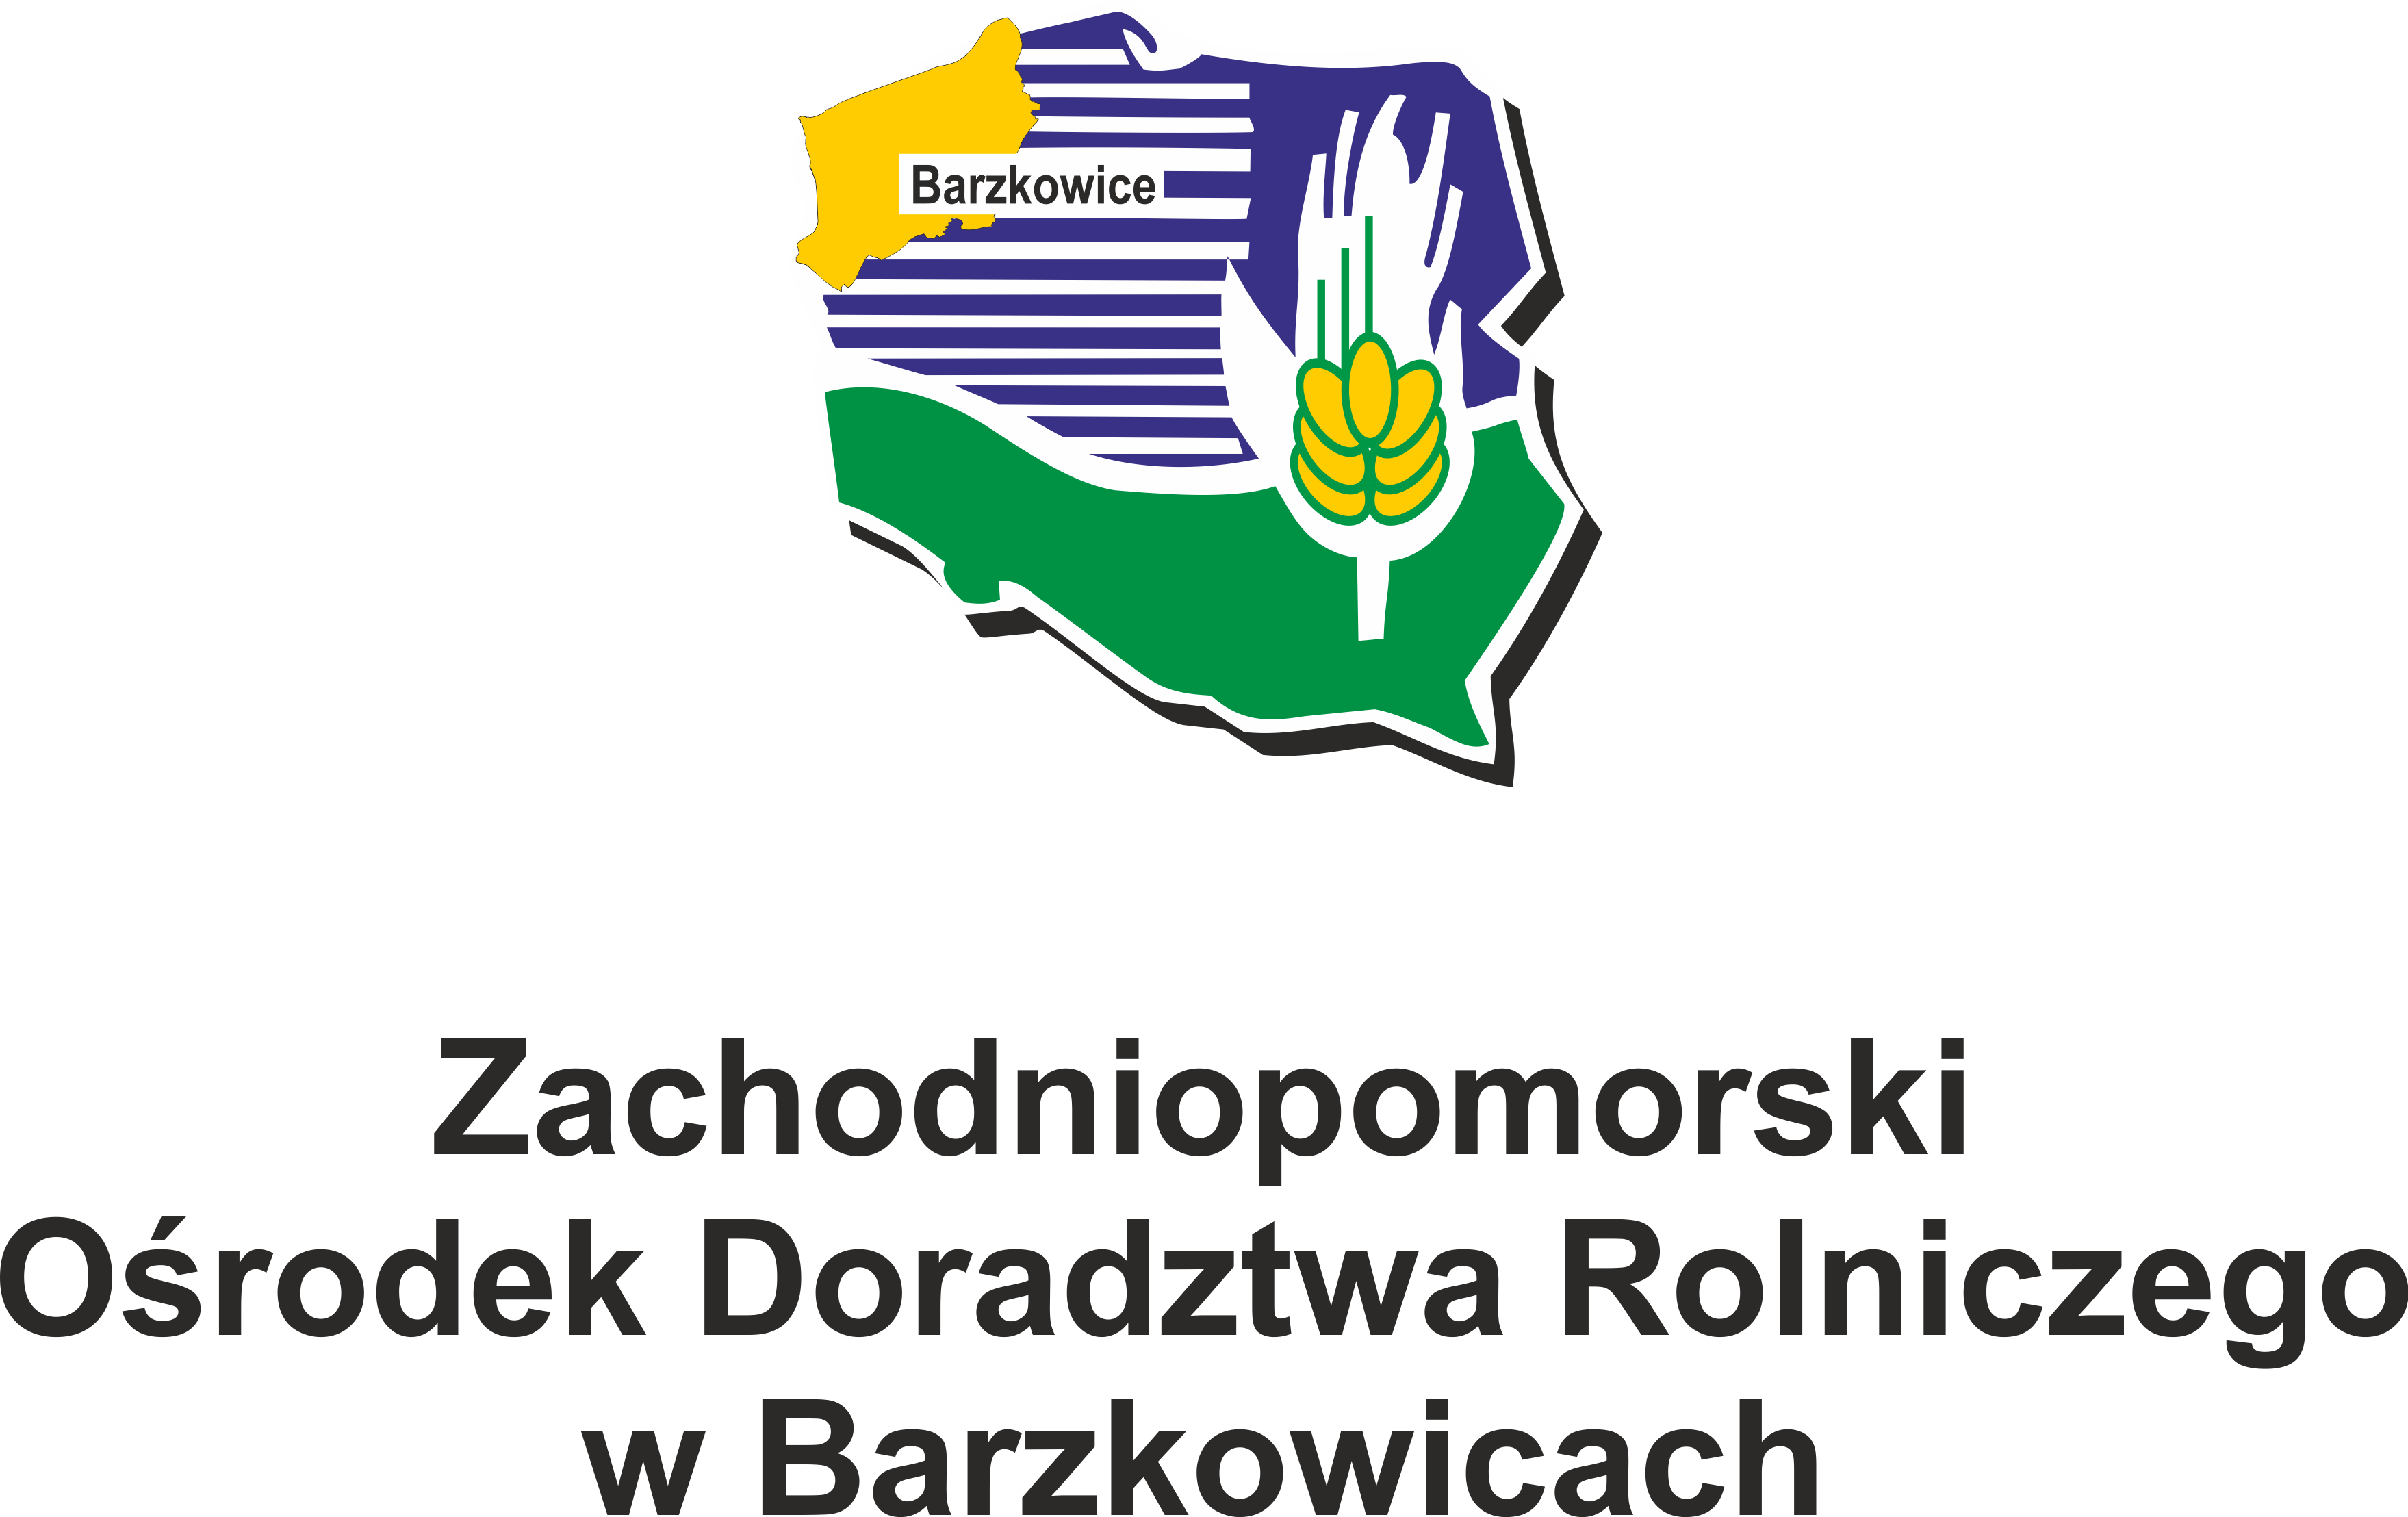 Zachodniopomorski Ośrodek Doradztwa Rolniczego w Barzkowicach